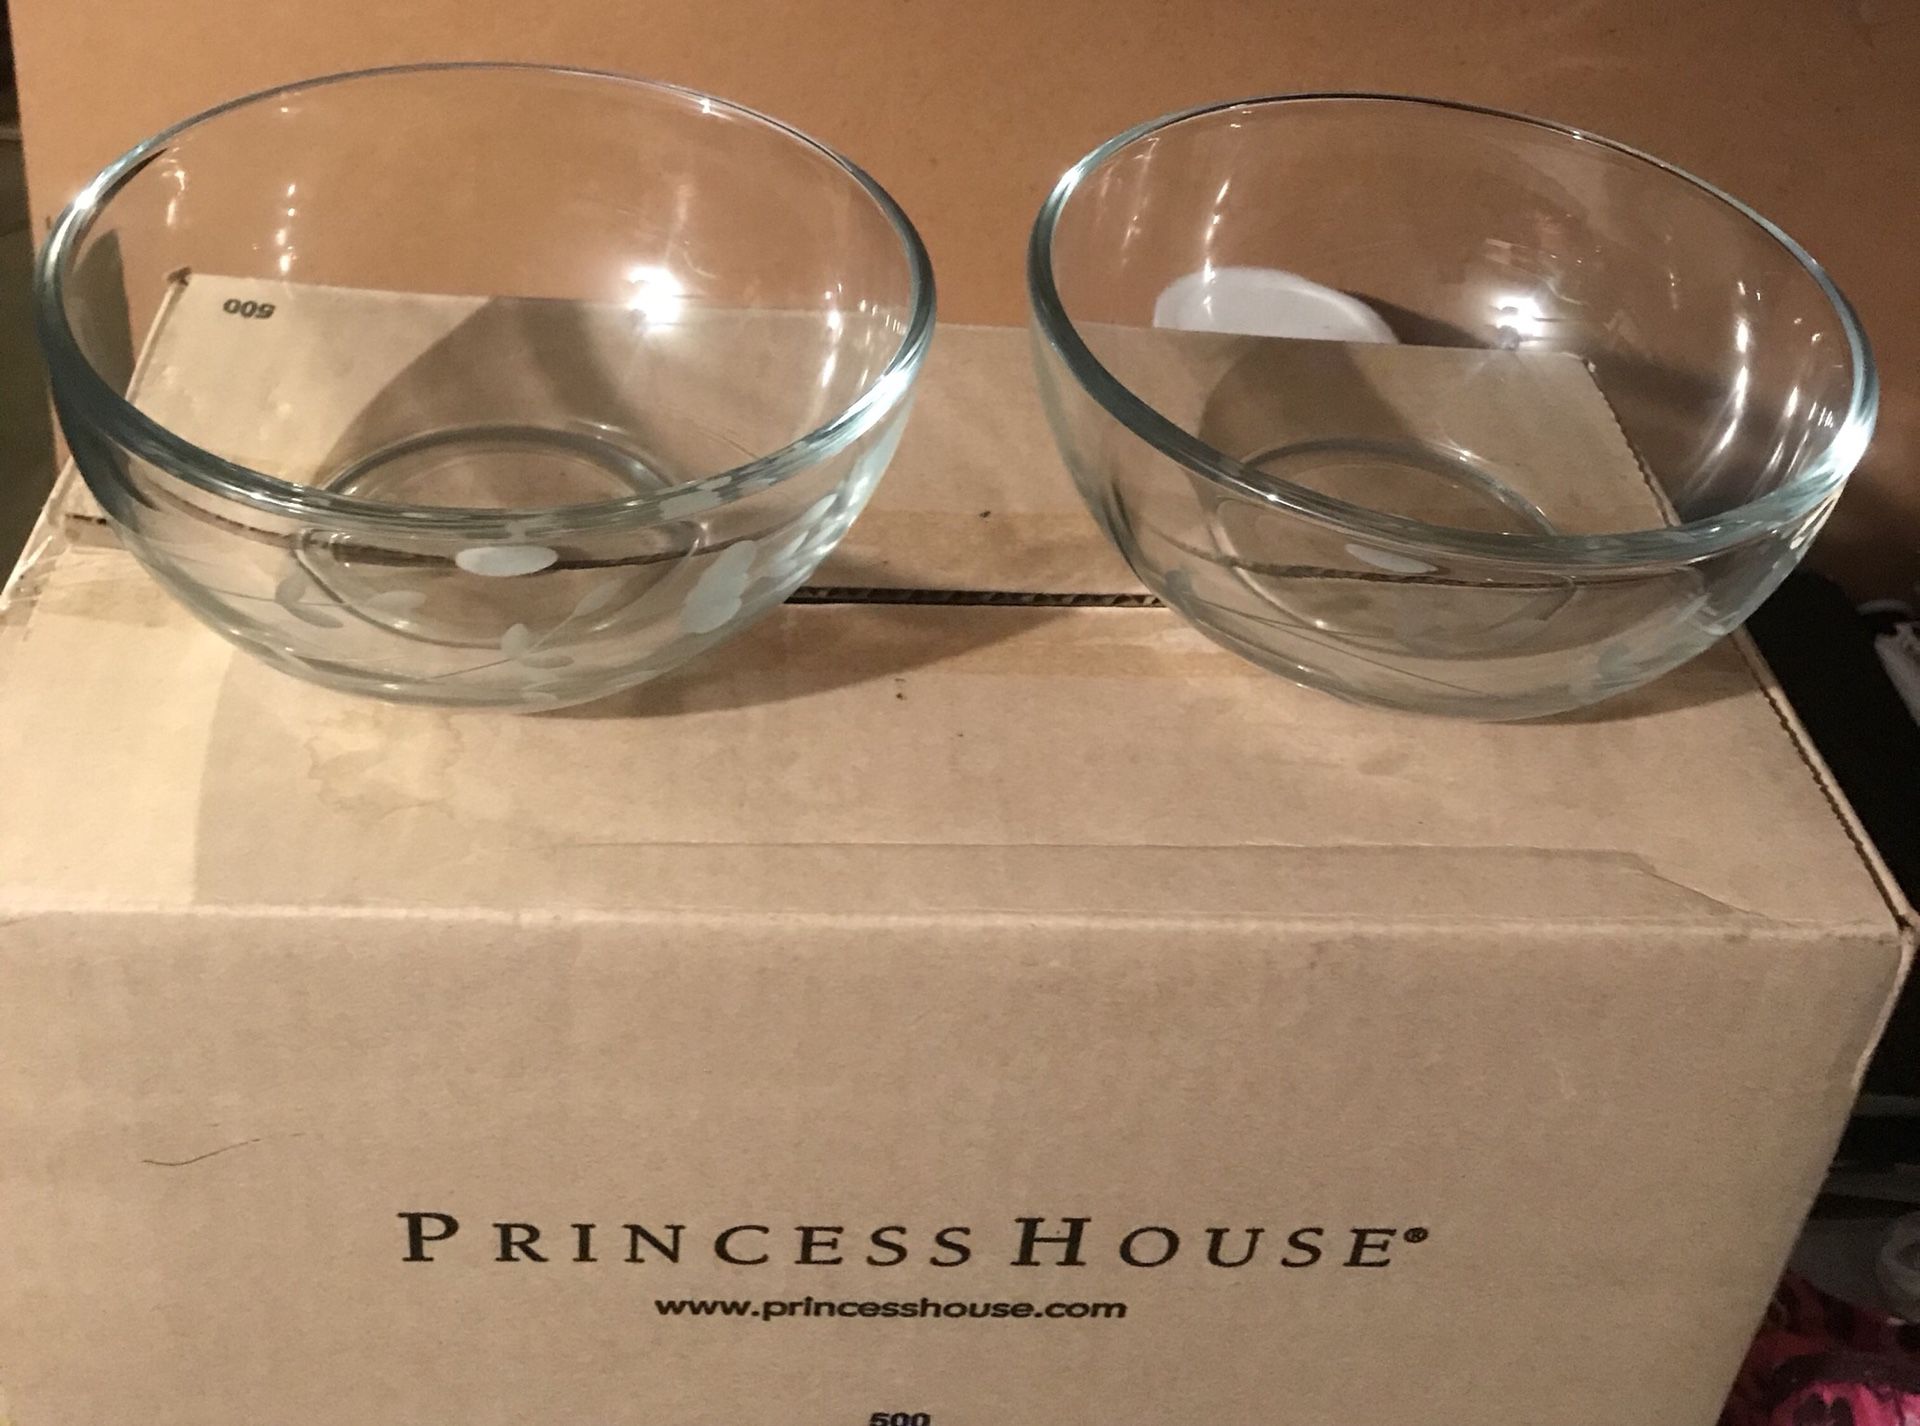 Princess house 2 trastes de crystal para guardar o llevar comida uno de 1  qt y otro de 2 qt, nuevos en caja los 2 con tapa, precio firme. for Sale in  Bell, CA - OfferUp